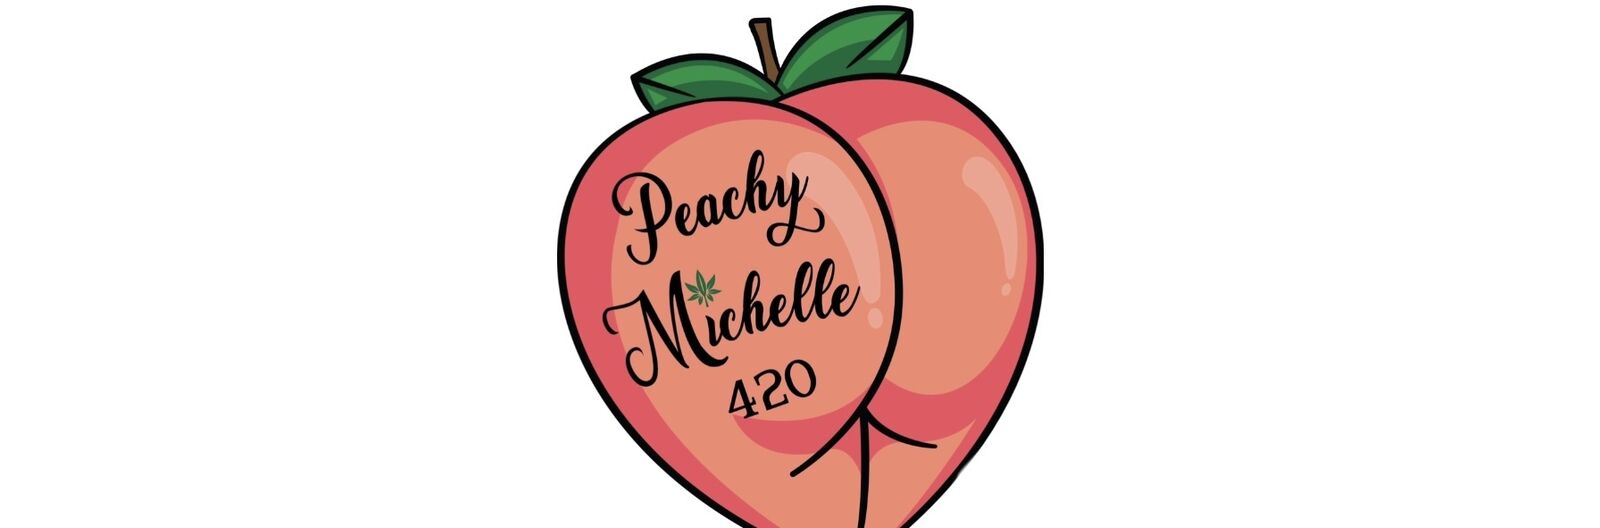 peachymichelle420vip